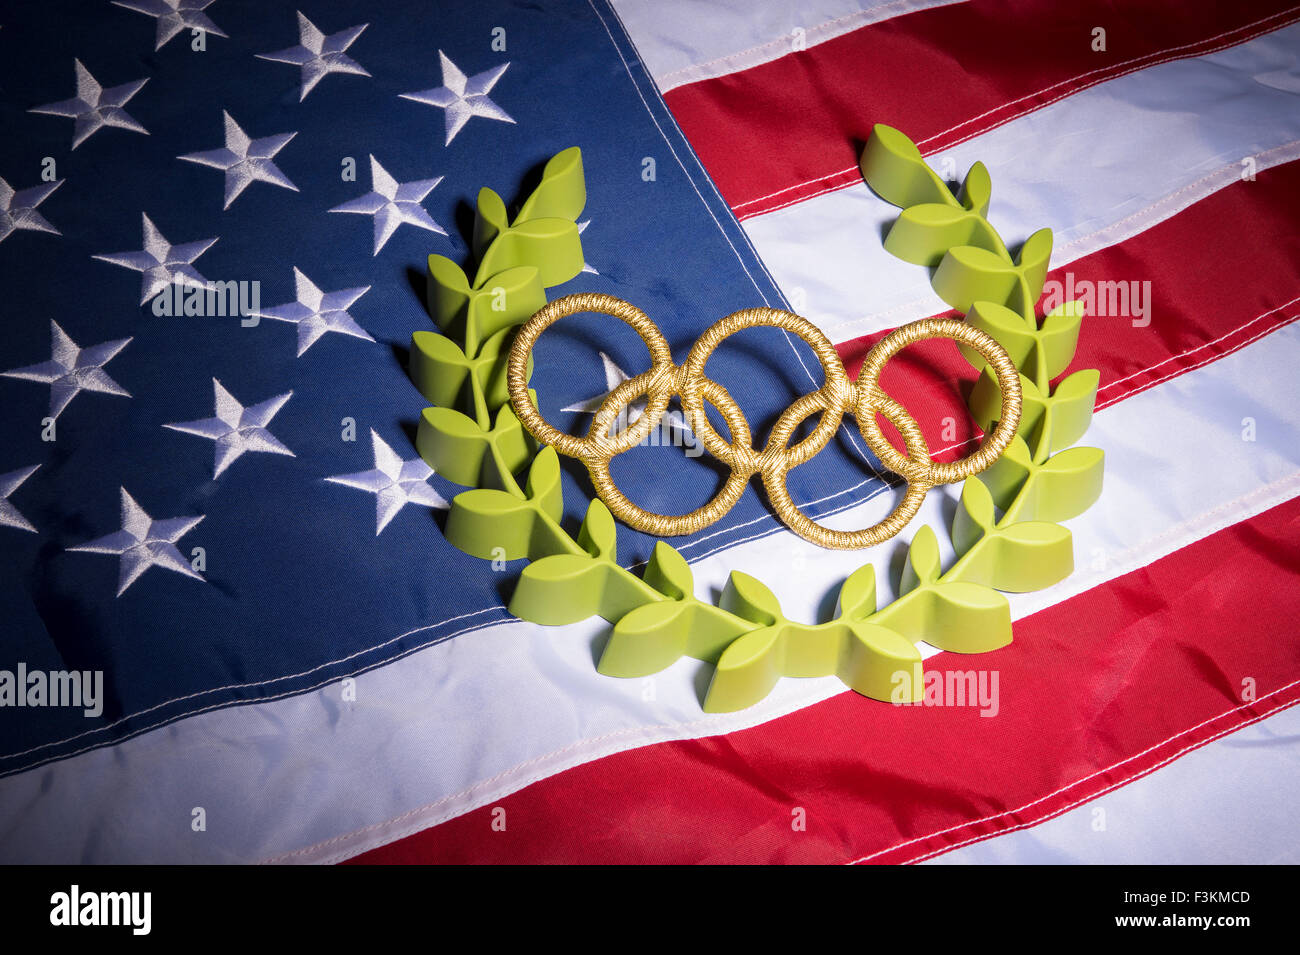 Río de Janeiro, Brasil - Febrero 3, 2015: Oro anillos olímpicos resto con corona de laurel sobre la bandera americana de fondo. Foto de stock